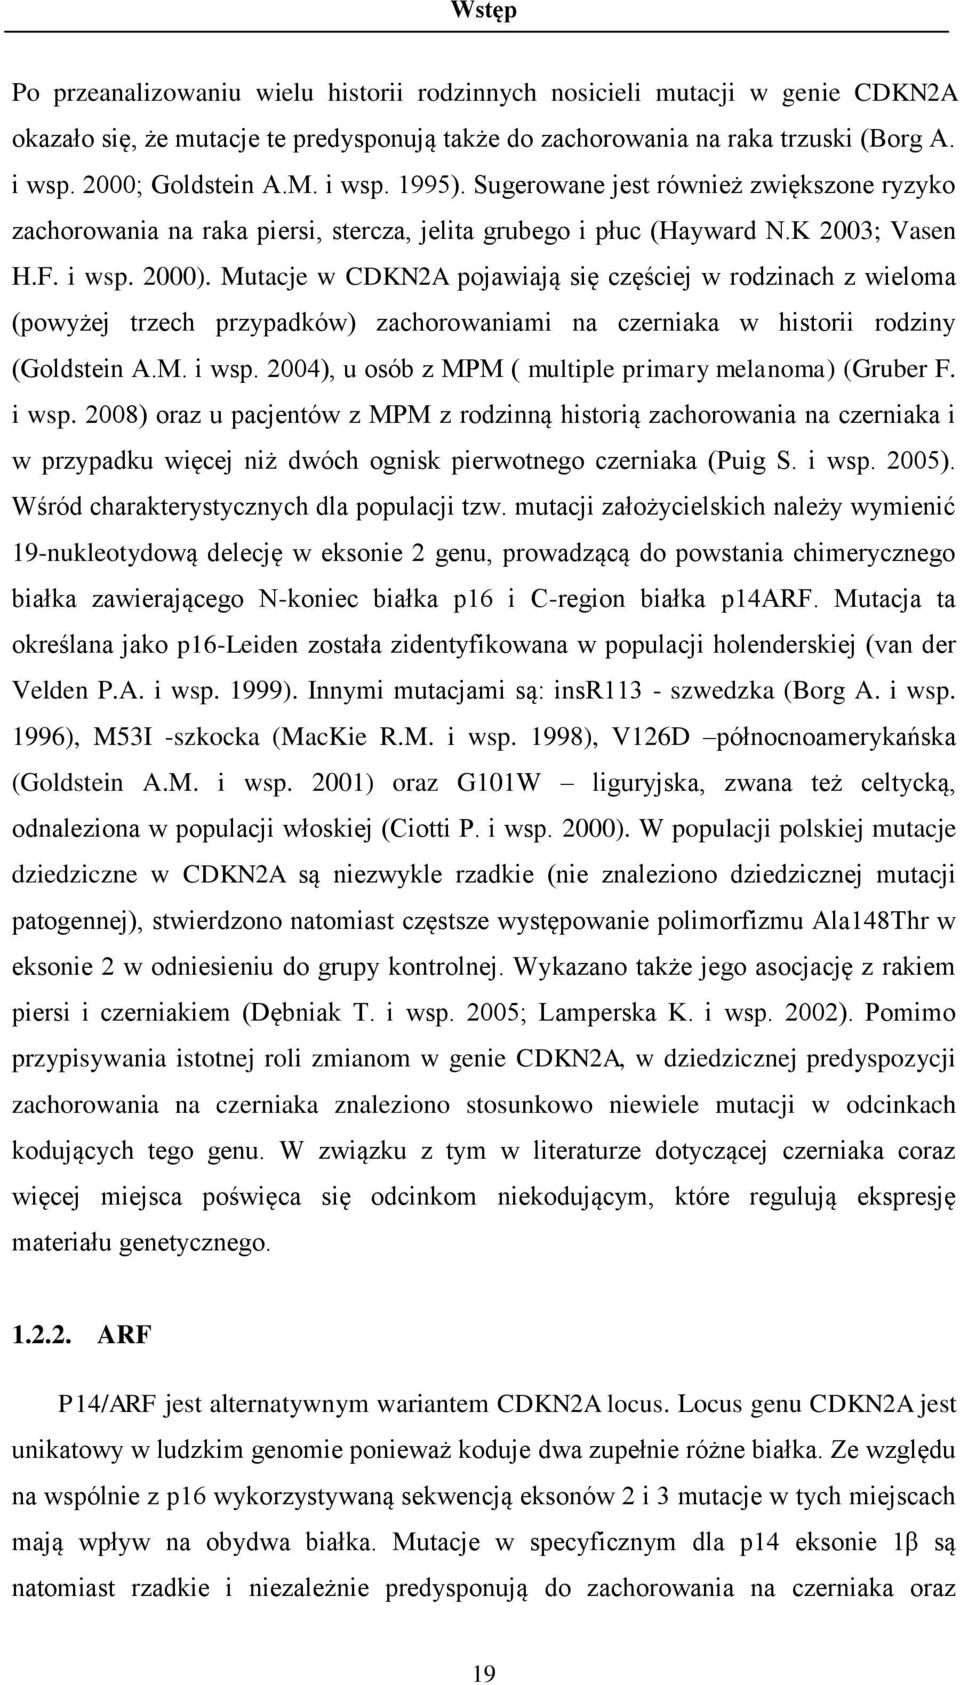 Mutacje w CDKN2A pojawiają się częściej w rodzinach z wieloma (powyżej trzech przypadków) zachorowaniami na czerniaka w historii rodziny (Goldstein A.M. i wsp.